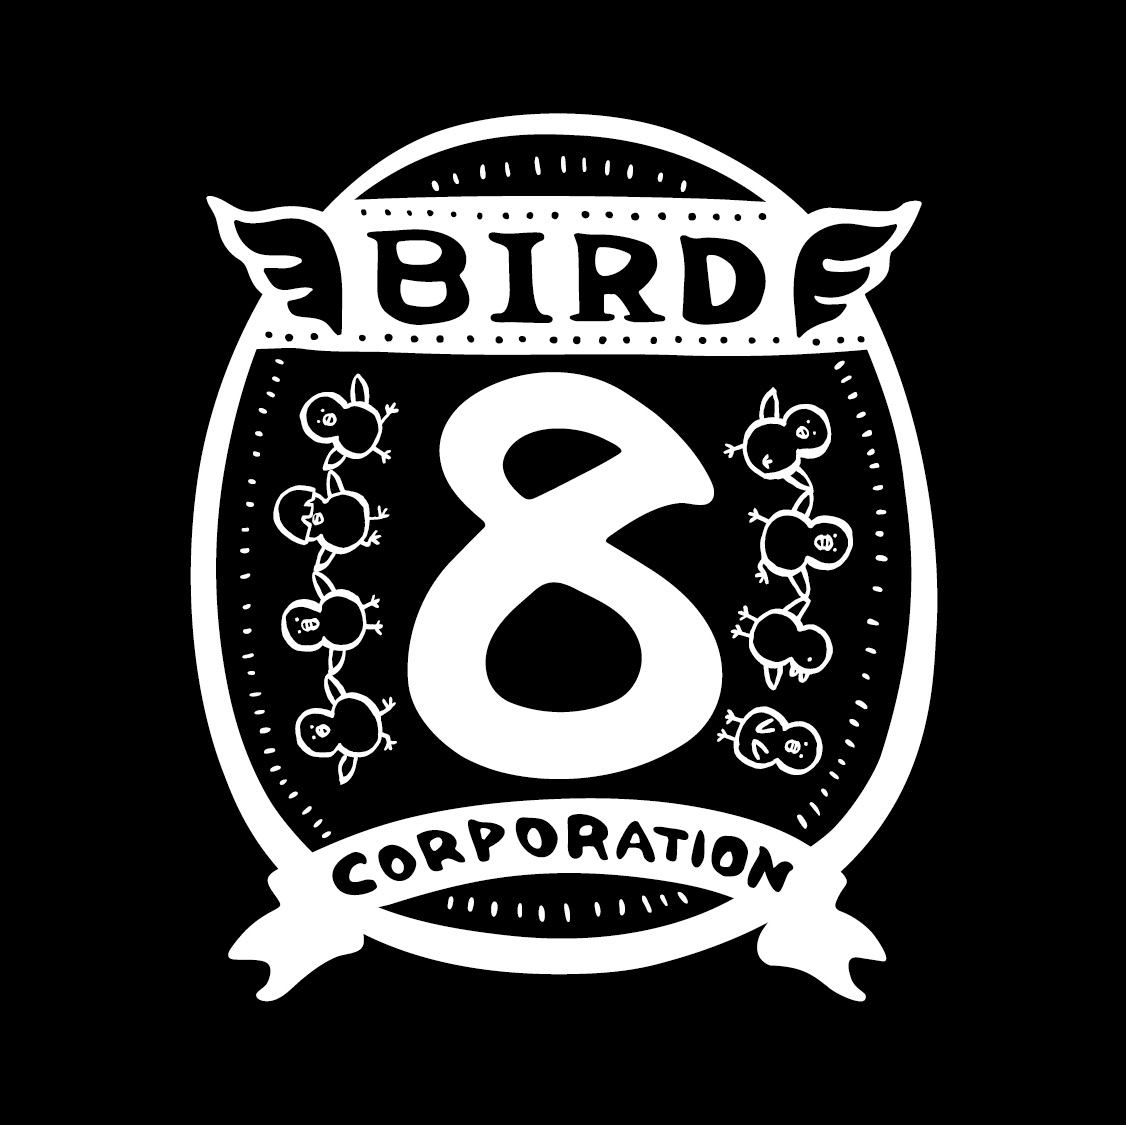 BIRD EIGHT corporation.